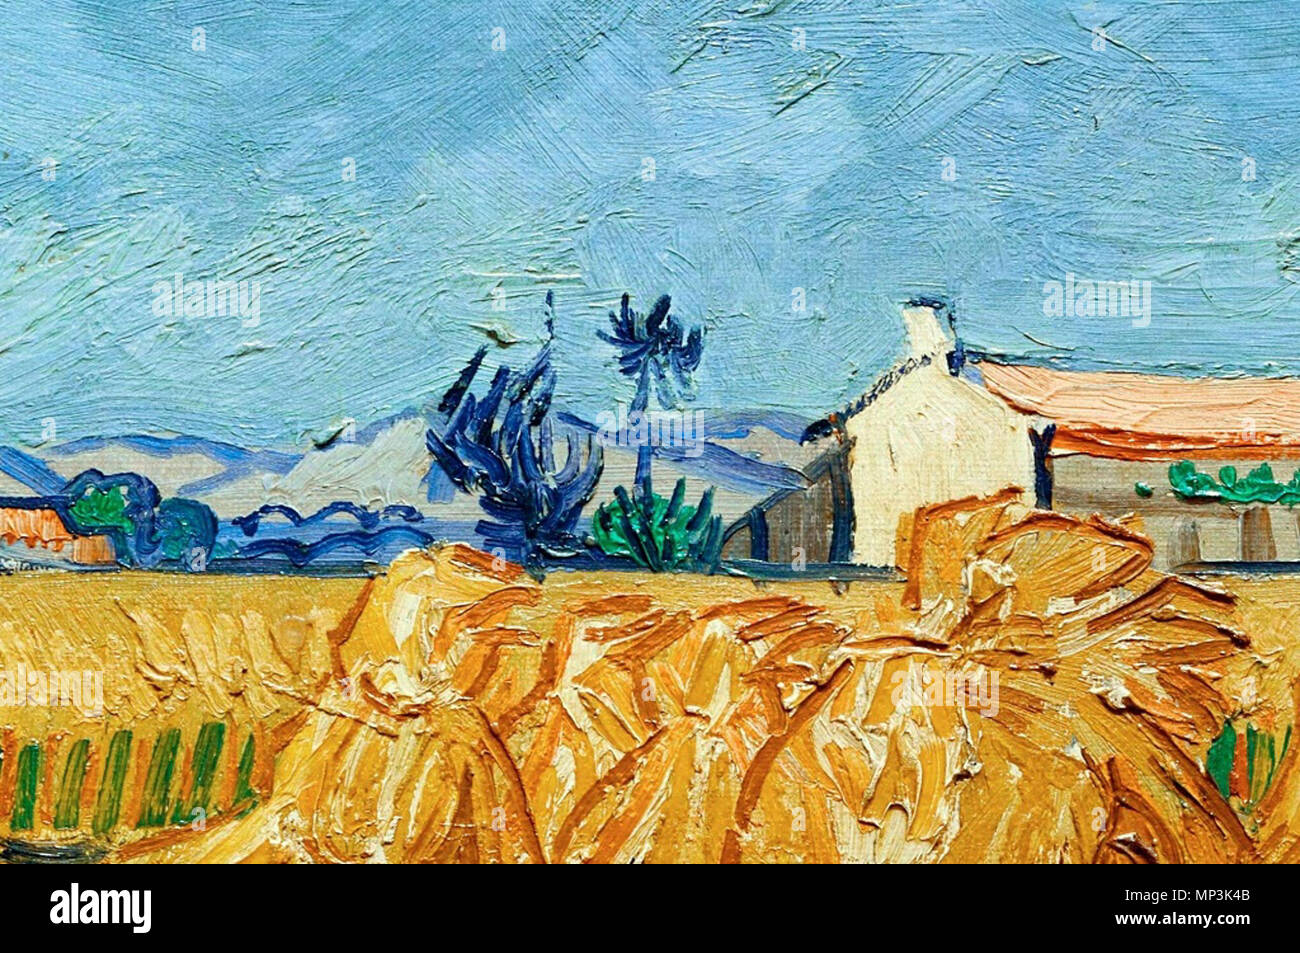 Vincent van Gogh, Detail der Ölmalerei: Ernte in Arles in der Provence, Arles, Juni 1888, 1024 x 680 px Ernte in der Provence. Englisch: Vincent van Gogh, Detail der Ölmalerei: Ernte in Arles in der Provence, Arles, Juni 1888. Juni 1888. 1238 Vincent-van-Gogh Detail - der Ernte-at-Arles-in-der-Provence Arles-June-1888 Stockfoto